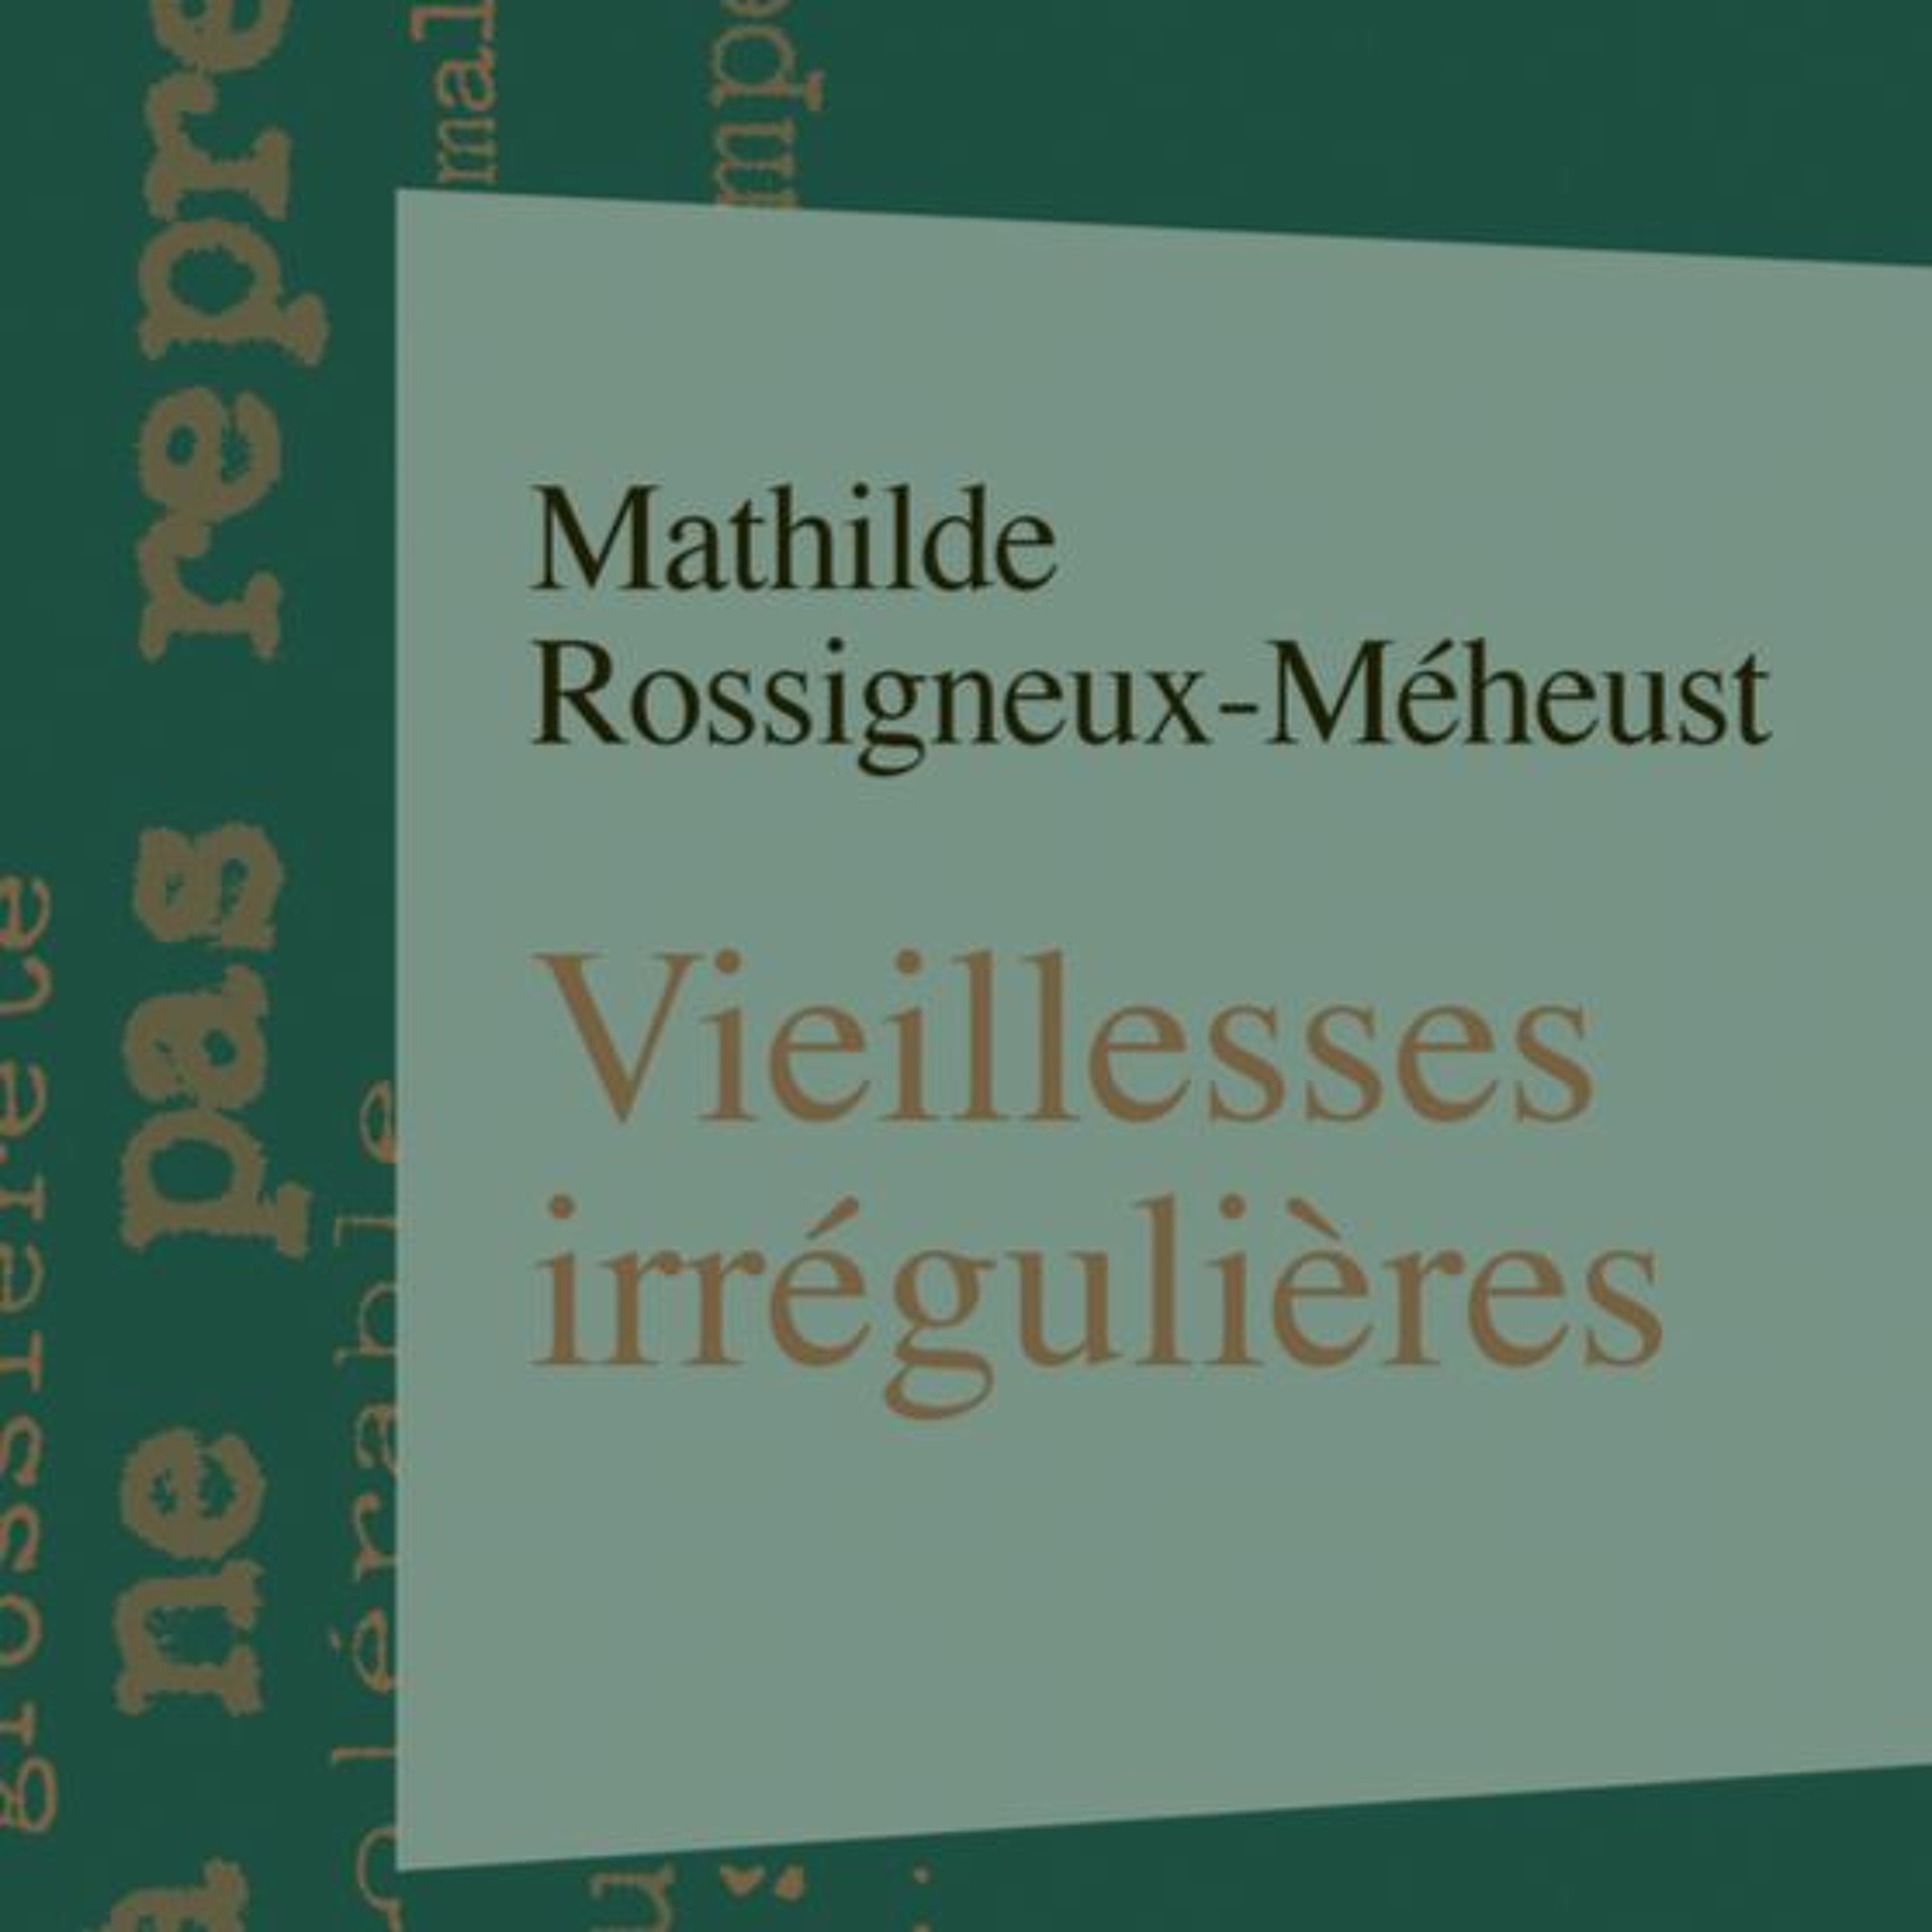 Chemins d'histoire-Vieillesses irrégulières, avec M. Rossigneux-Méheust, 18.09.22